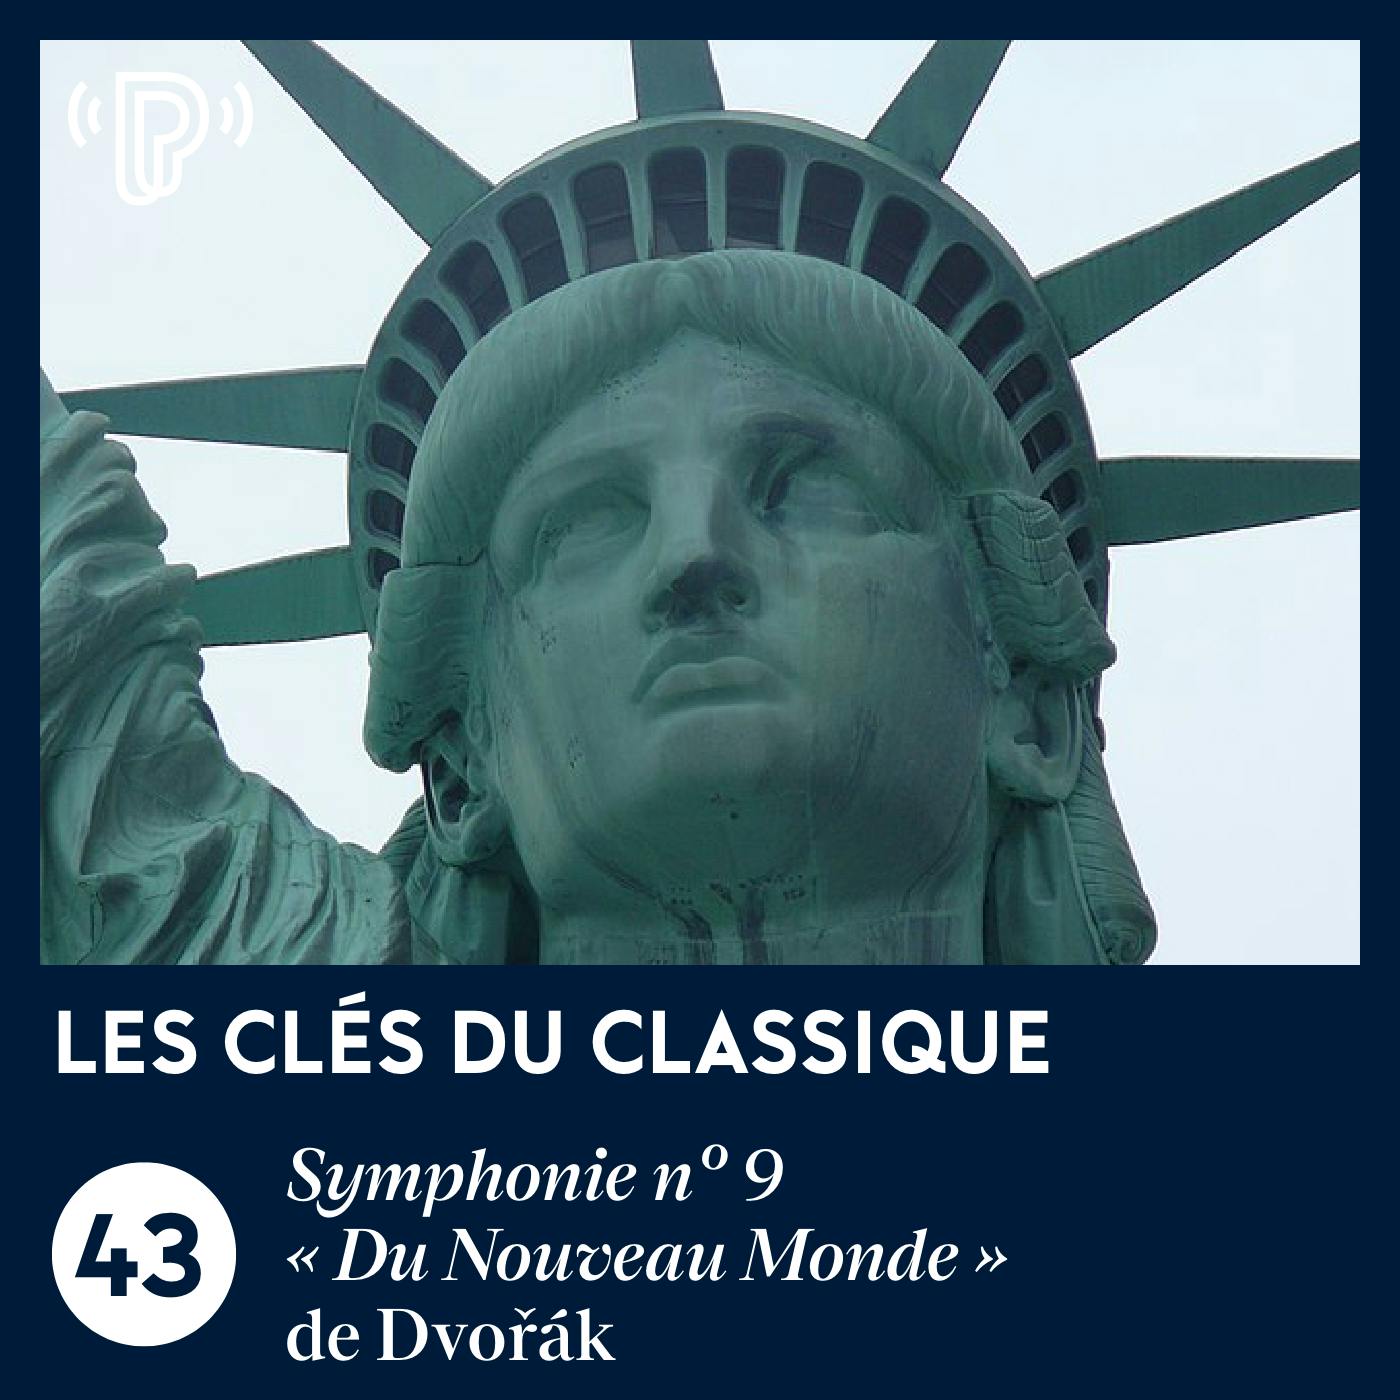 La Symphonie n° 9 « Du Nouveau Monde » de Dvořák | Les Clés du classique #43